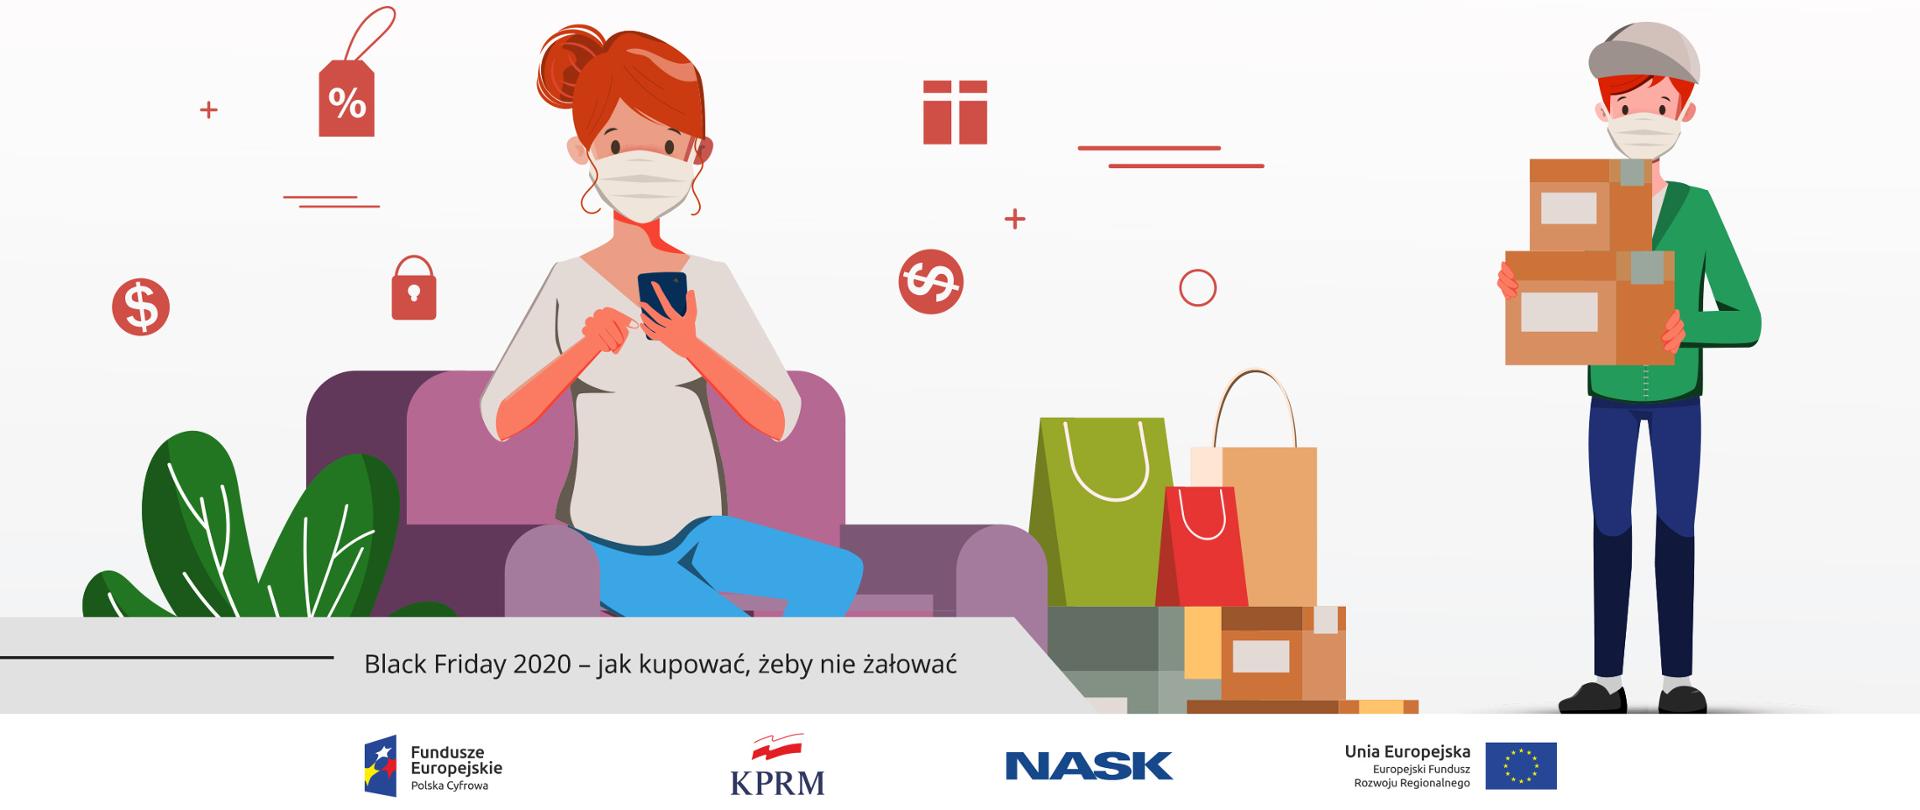 Grafika wektorowa - kobieta w maseczce, siedzi na kanapie i robi zakupy przez internet (w telefonie), obok niej - torby z zakupami. Z prawej strony kurier dostarczający kolejne paczki.